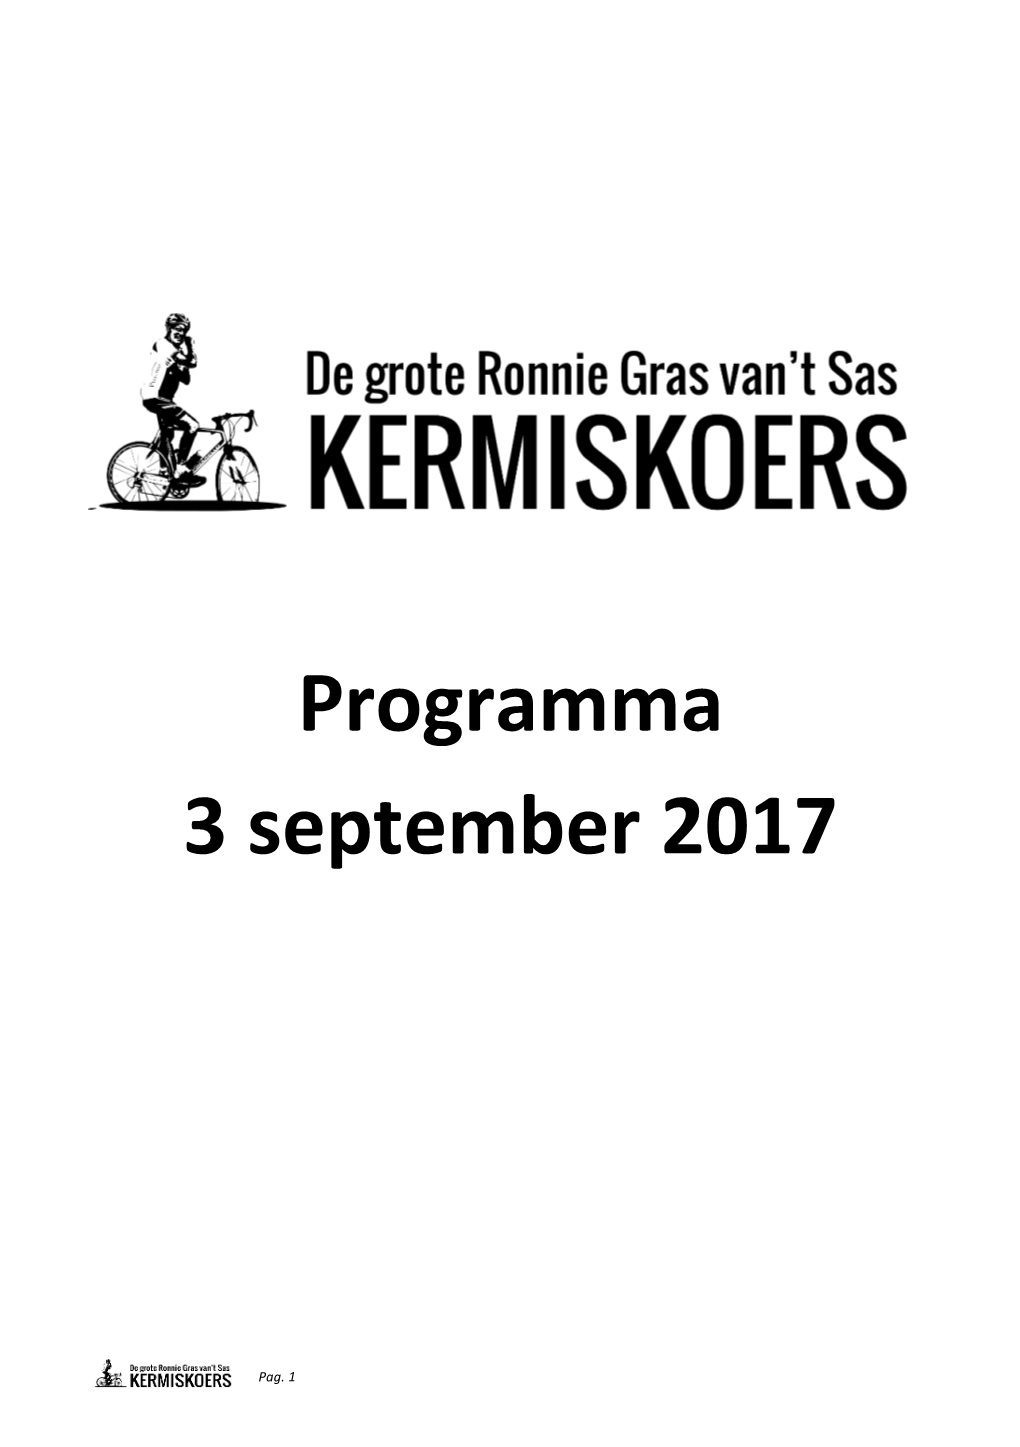 Programma 3 September 2017